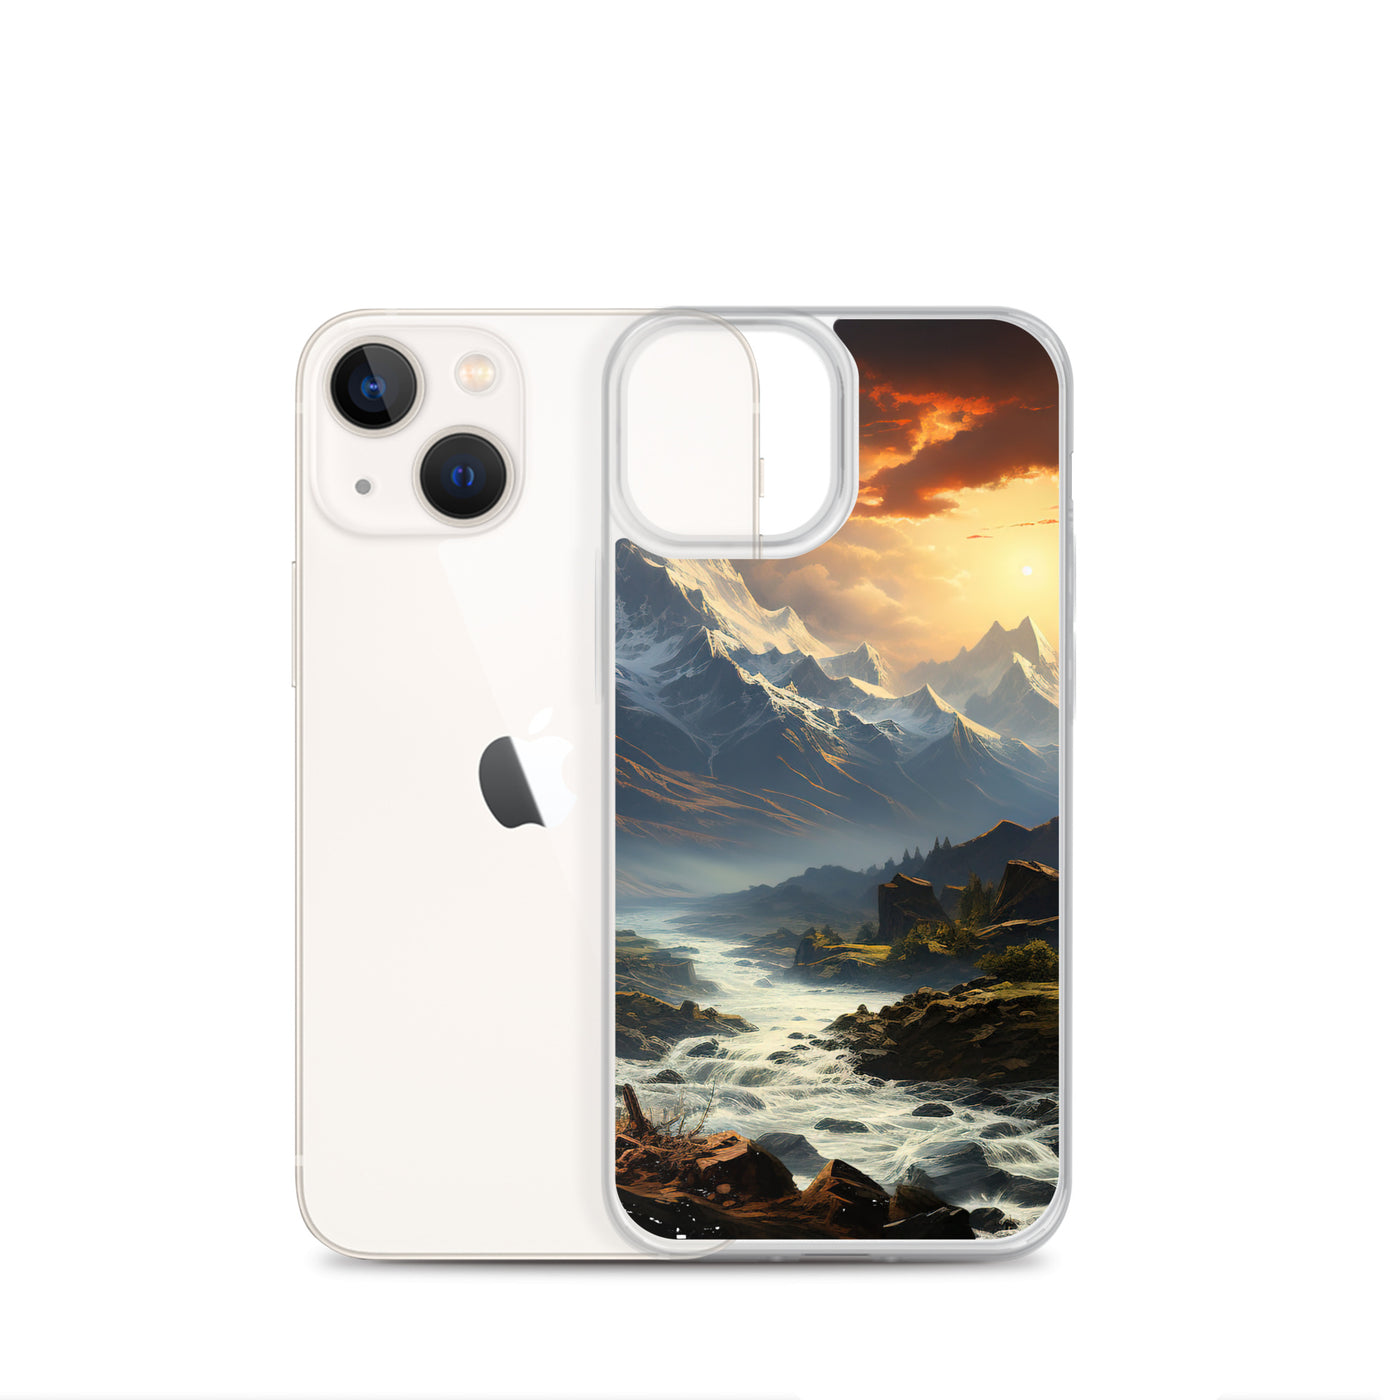 Berge, Sonne, steiniger Bach und Wolken - Epische Stimmung - iPhone Schutzhülle (durchsichtig) berge xxx